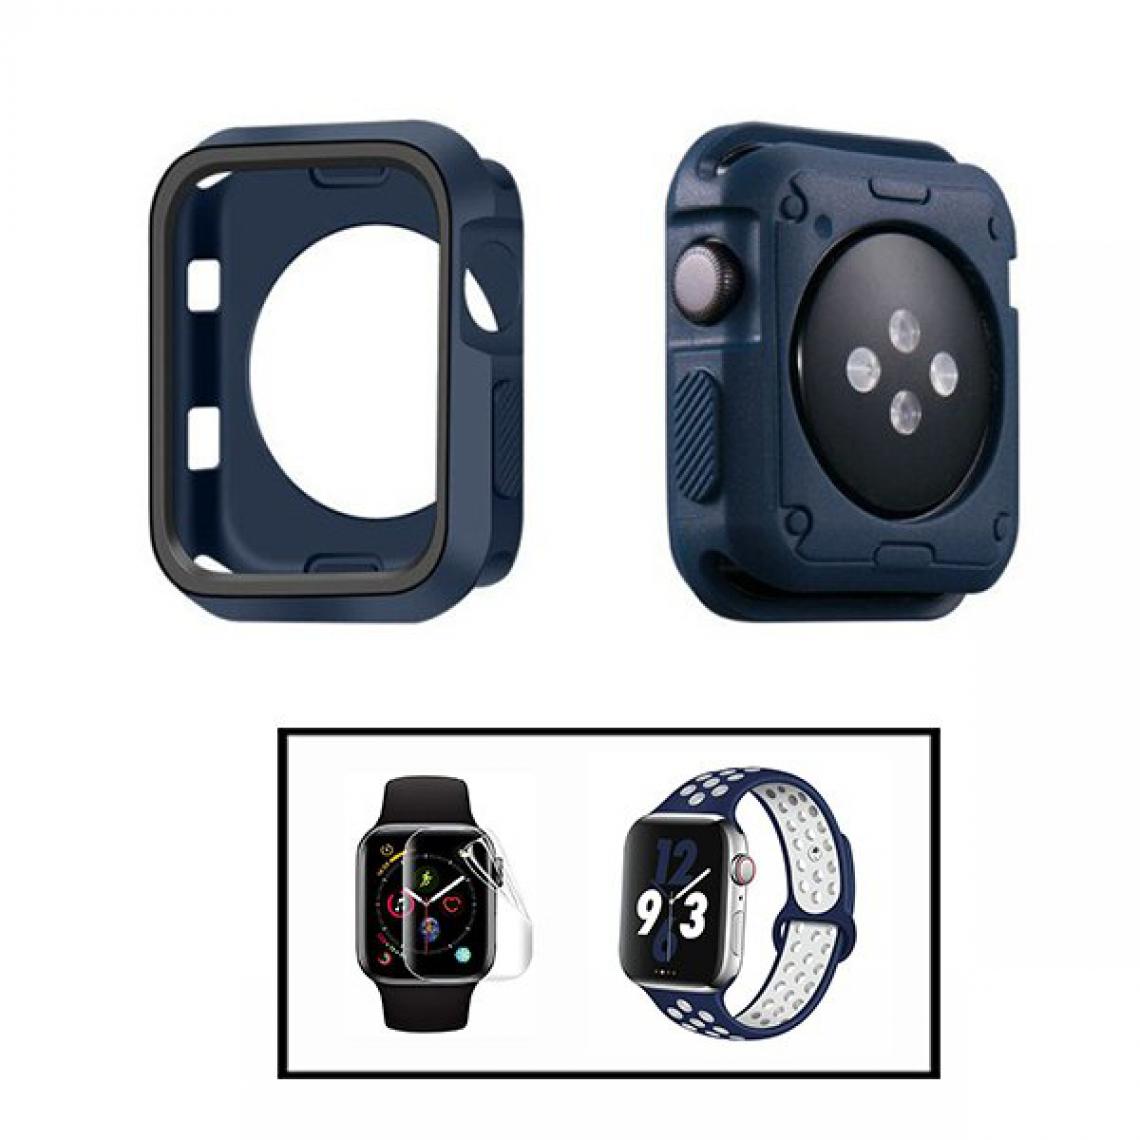 Phonecare - Kit Coque Military DoubleColor + Bracelet SportyStyle + Film de Hydrogel pour Apple Watch Seriess 4 - 40mm - Bleu foncé / Noir / Bleu foncé / Blanc - Coque, étui smartphone